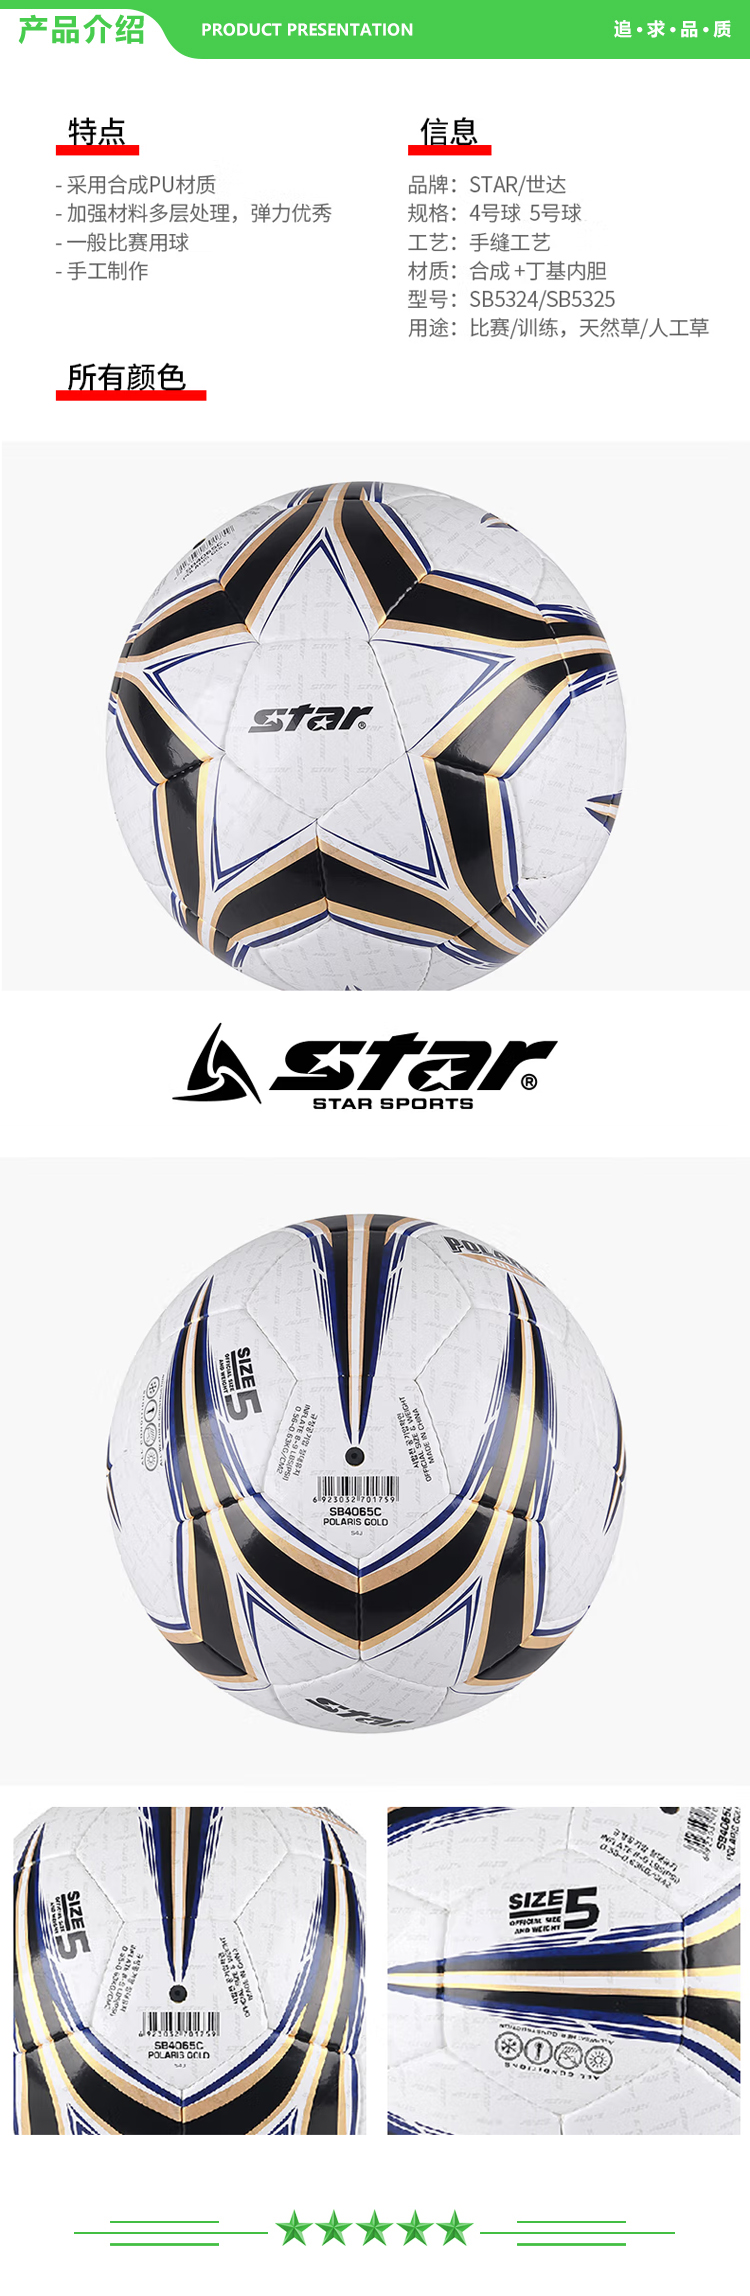 世达 star SB4065C 5号球 耐磨PU材料 比赛训练用足球  2.jpg